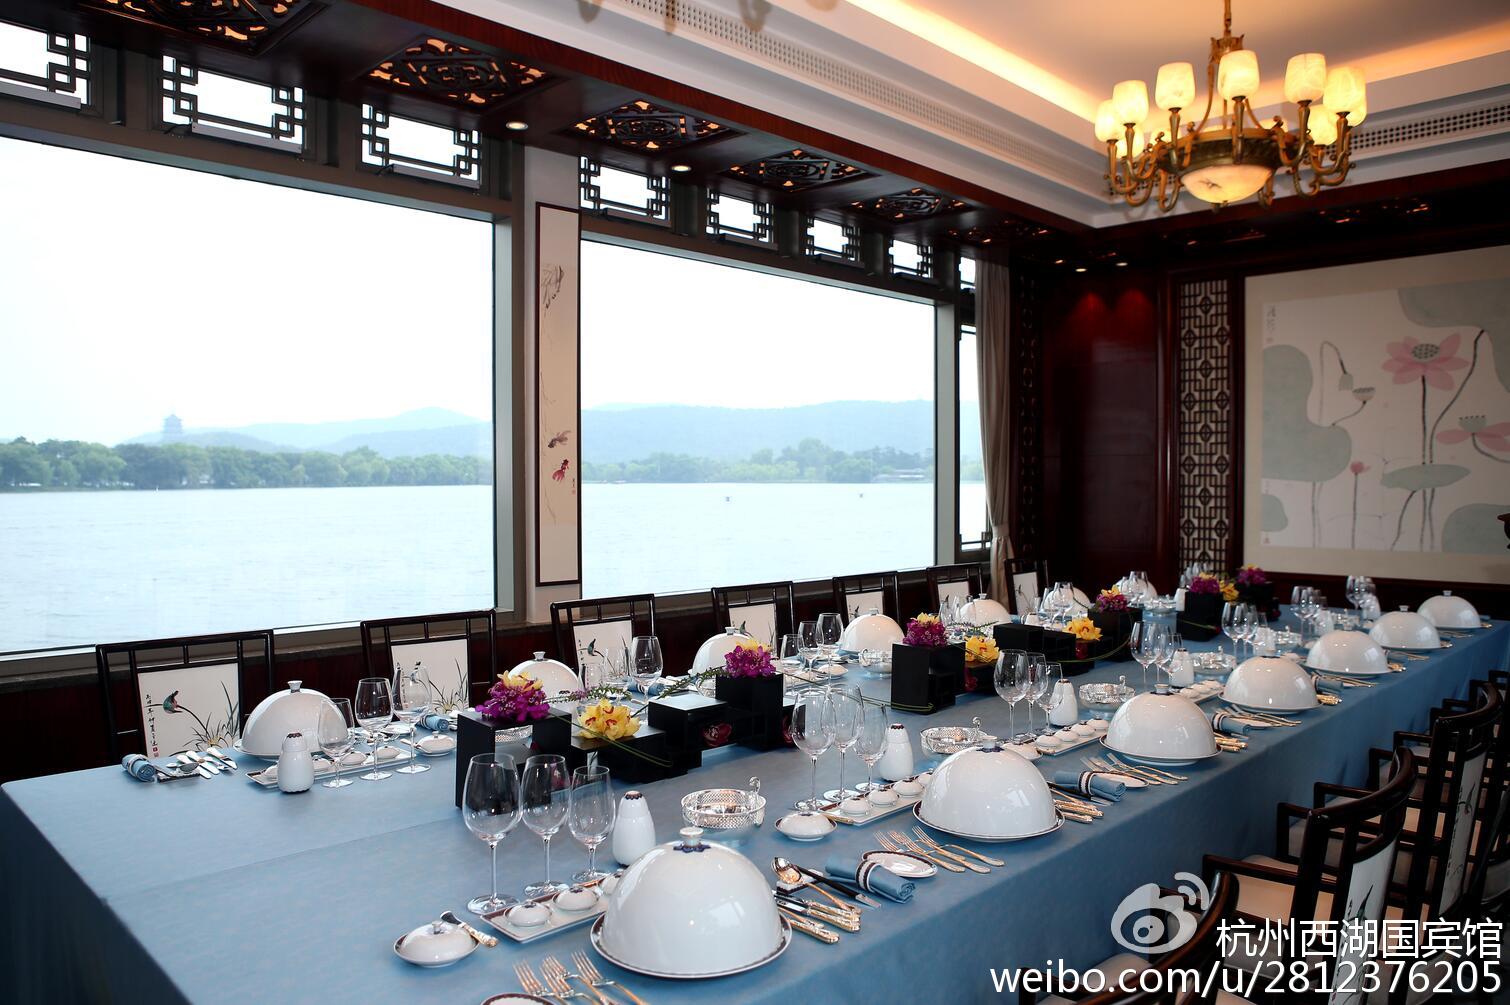 国器之粹西湖国宾馆g20杭州峰会国宴餐具限量预售